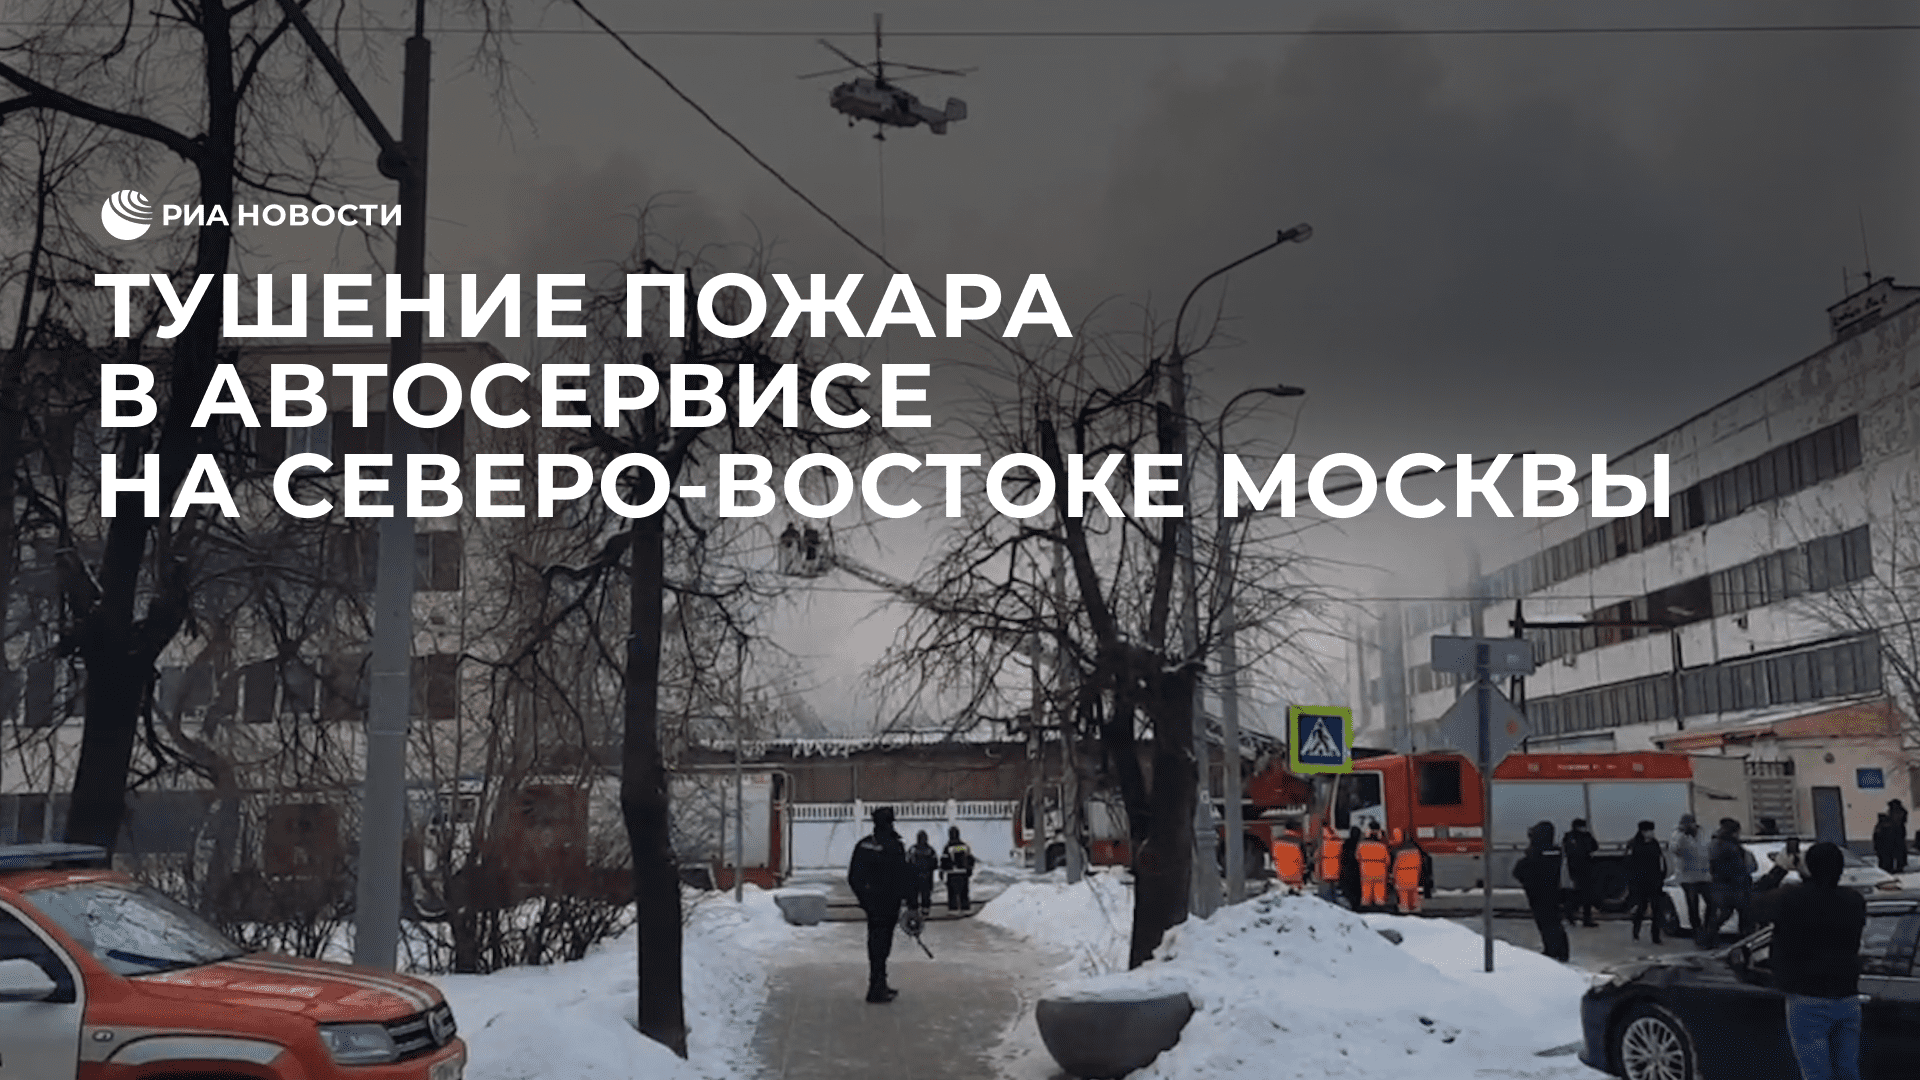 Тушение пожара в автосервисе на северо-востоке Москвы